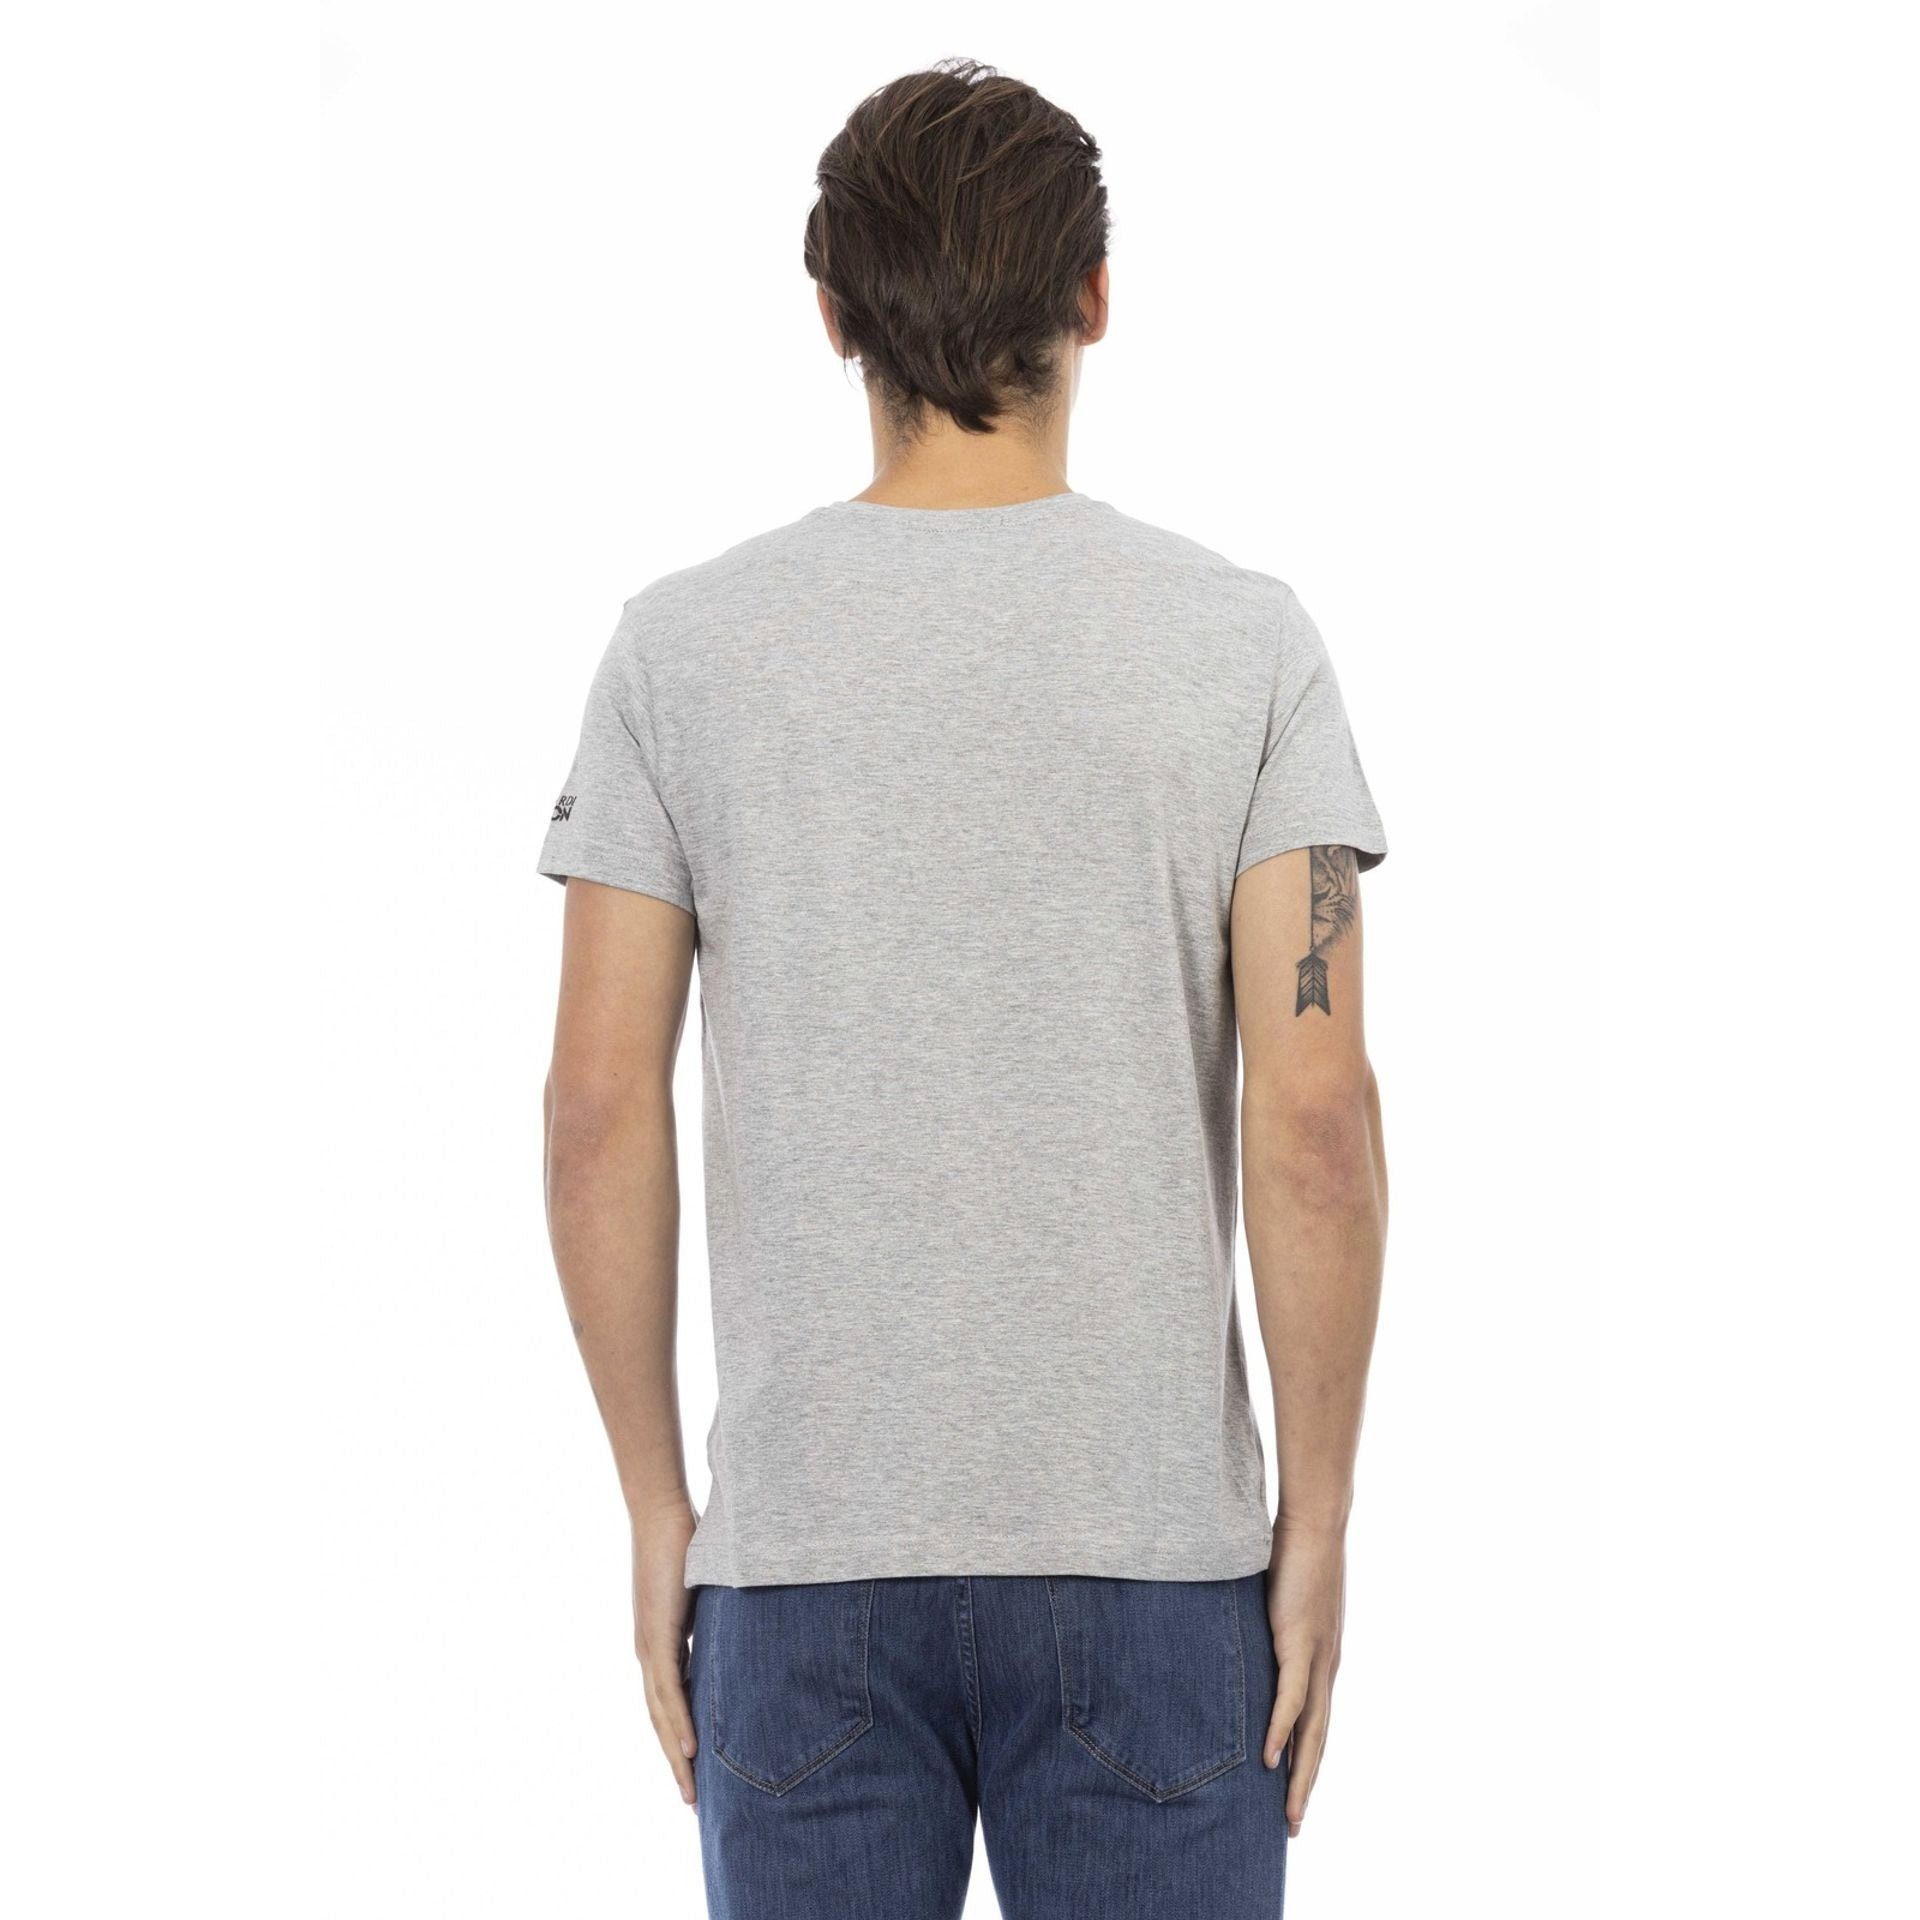 aus, Grau das Es Trussardi T-Shirt durch Note Action Logo-Muster verleiht das stilvolle Trussardi aber T-Shirts, zeichnet sich eine subtile,